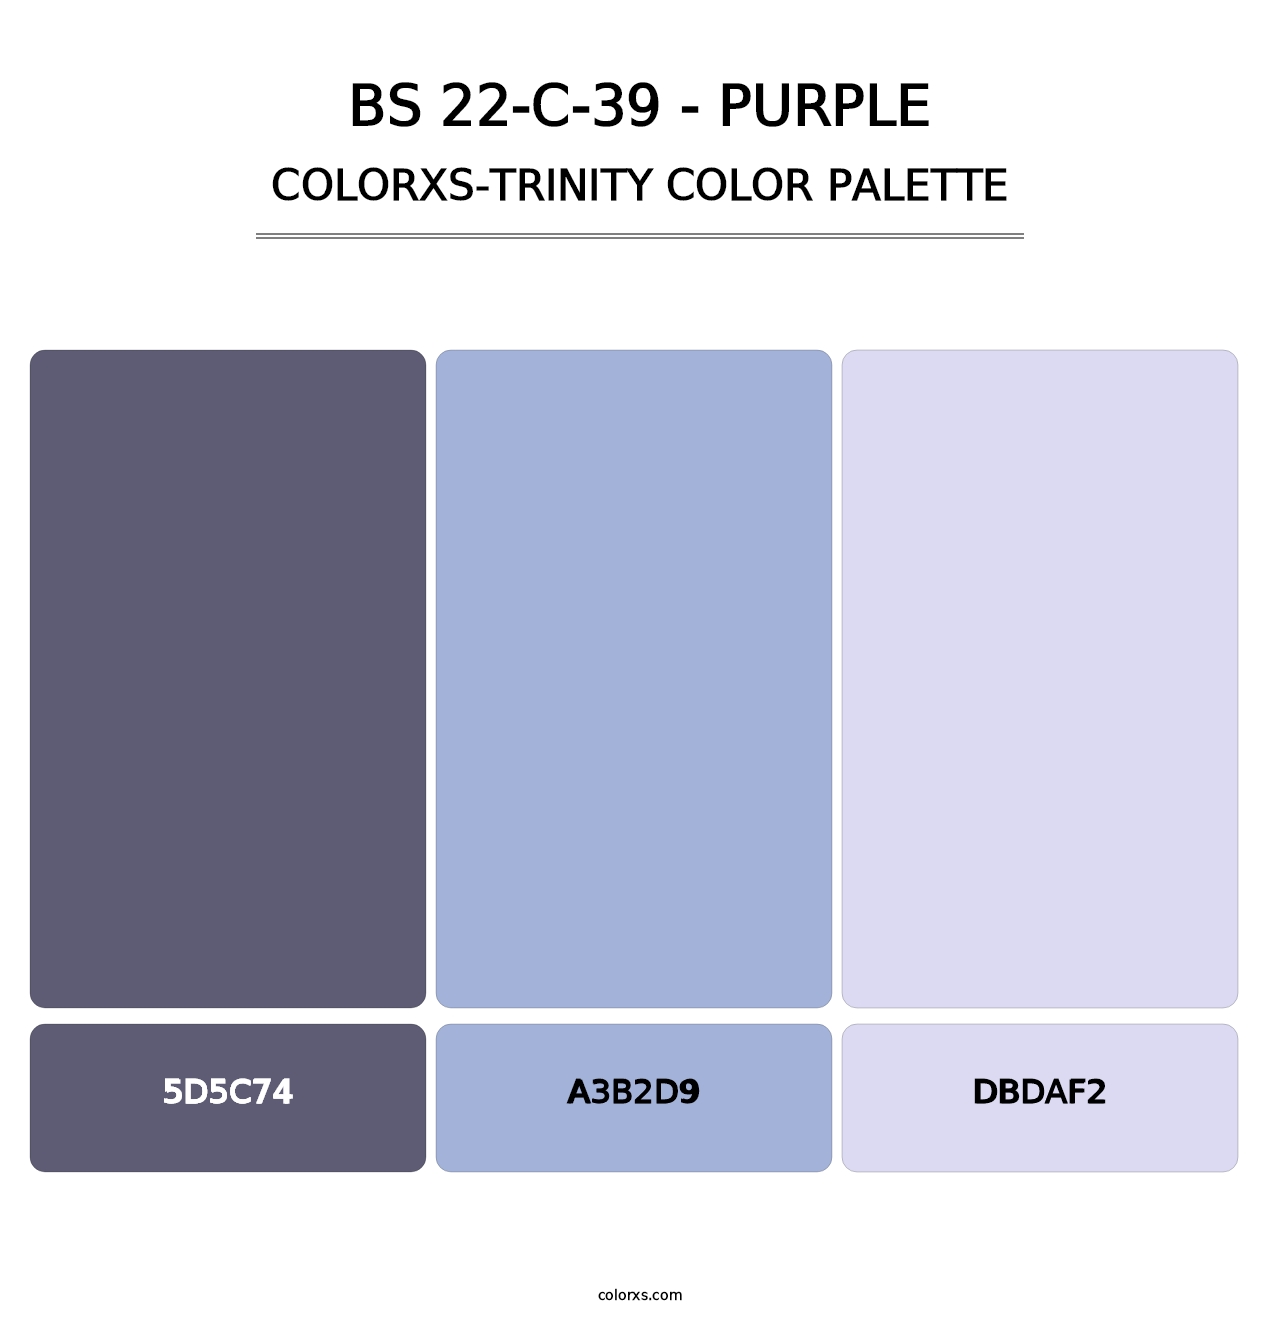 BS 22-C-39 - Purple - Colorxs Trinity Palette